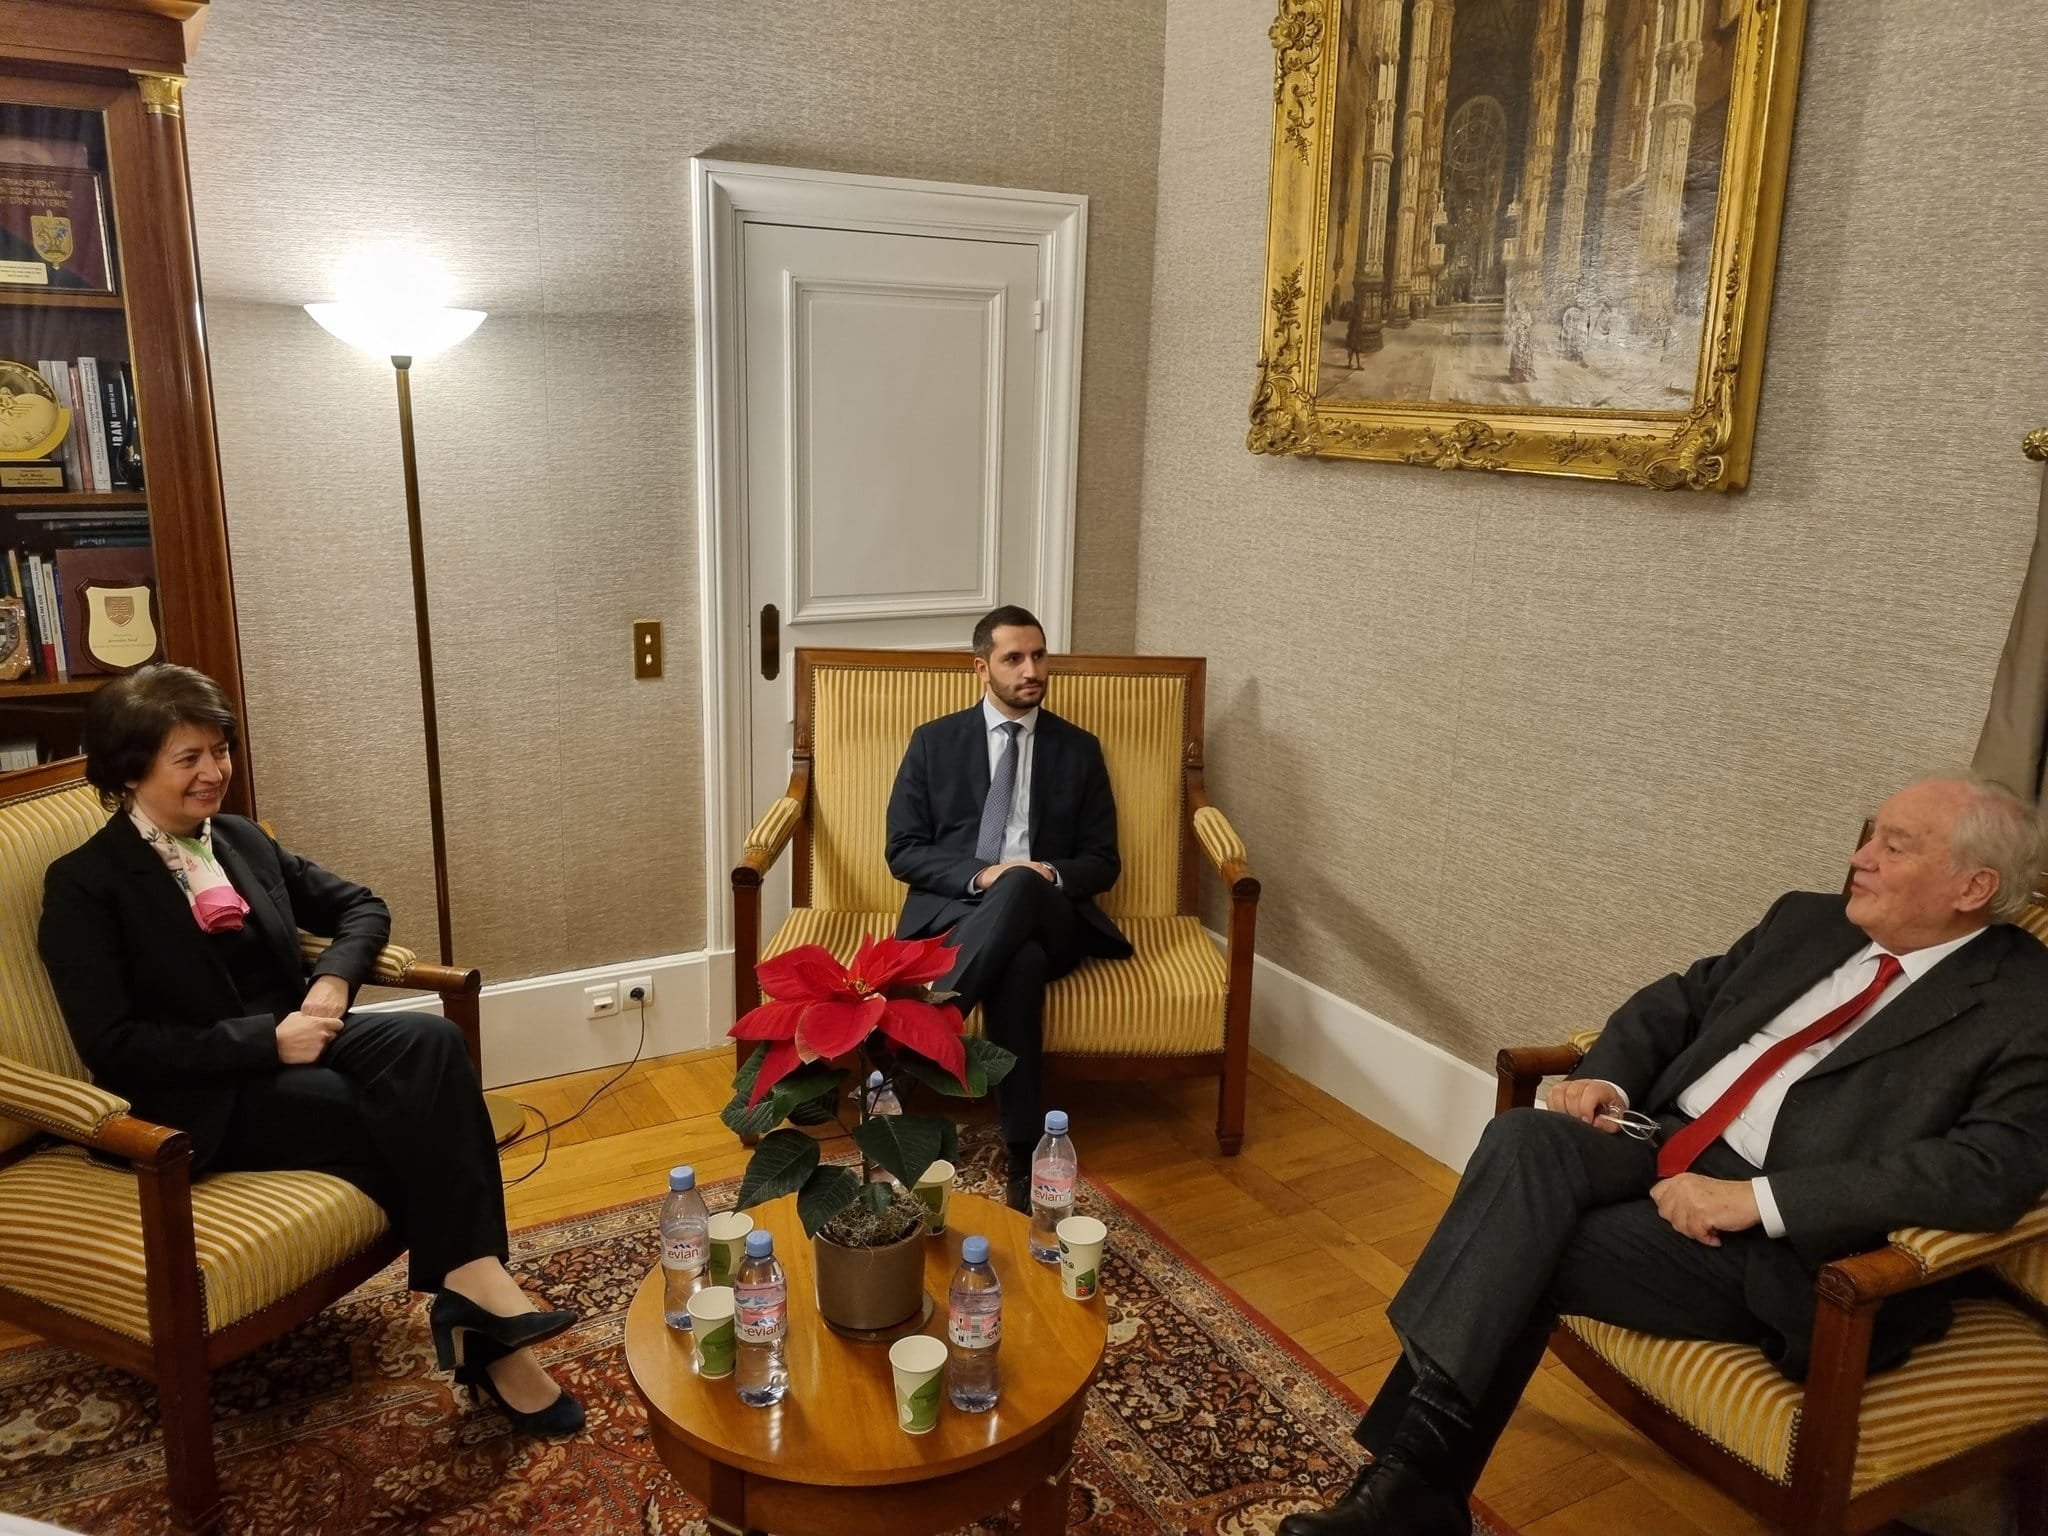 Ռուբեն Ռուբինյանը Փարիզում հանդիպել է Սենատի Արտաքին հարաբերությունների, պաշտպանության և զինված ուժերի մշտական հանձնաժողովի նախագահ Քրիստիան Կամբոնին